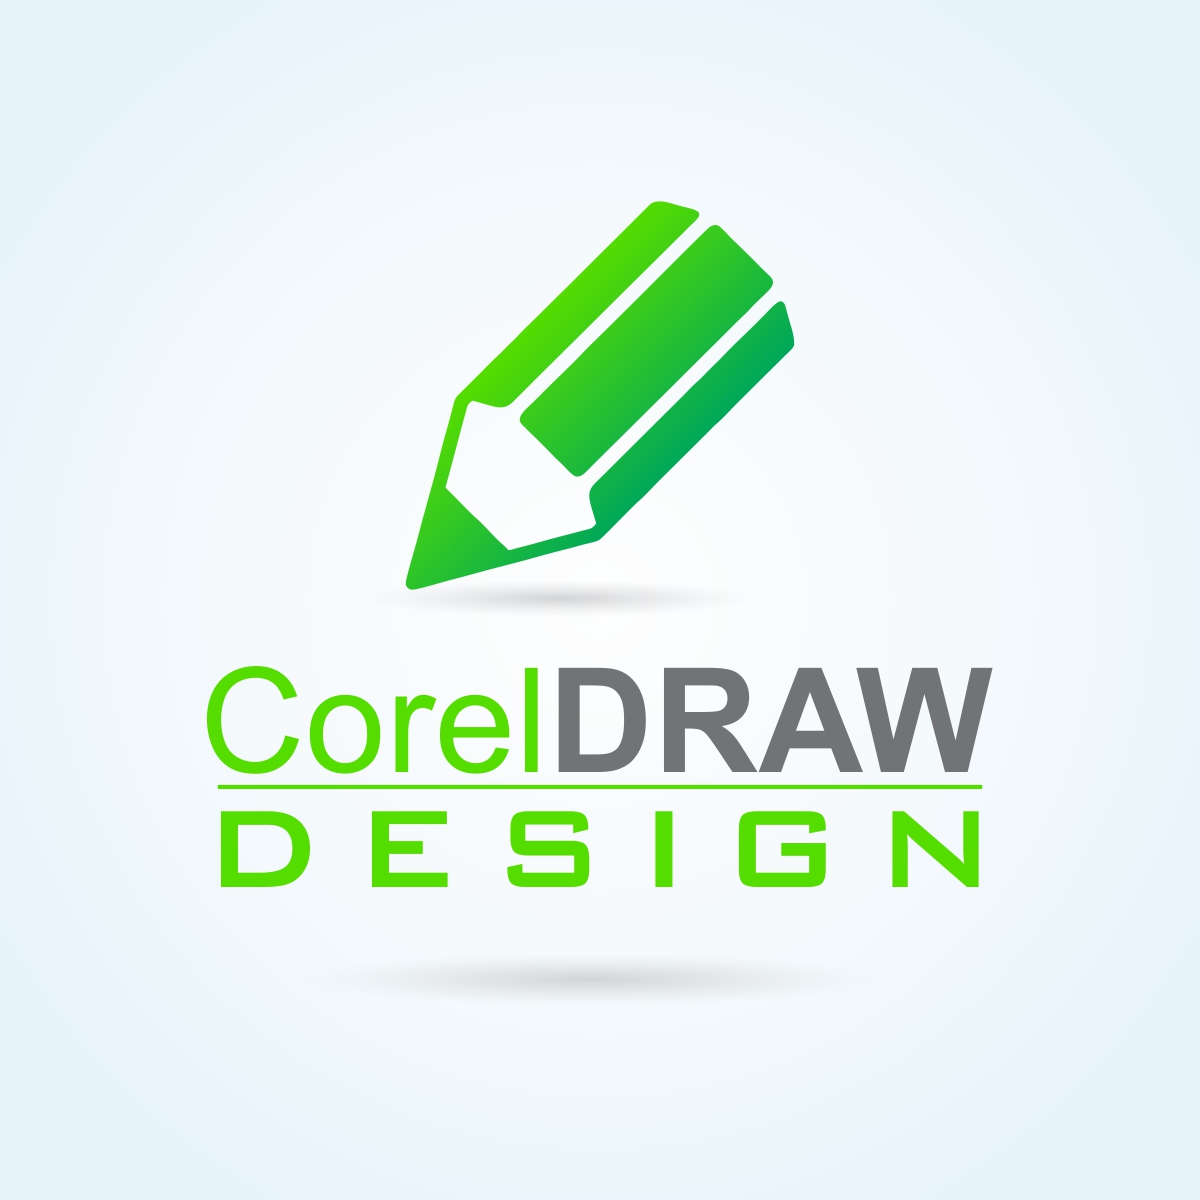 Free Download Corel Draw X7 Bản Gốc 32 & 64 Bit | VTPcorel | - VTPcorel |  DV Thương mại File TK